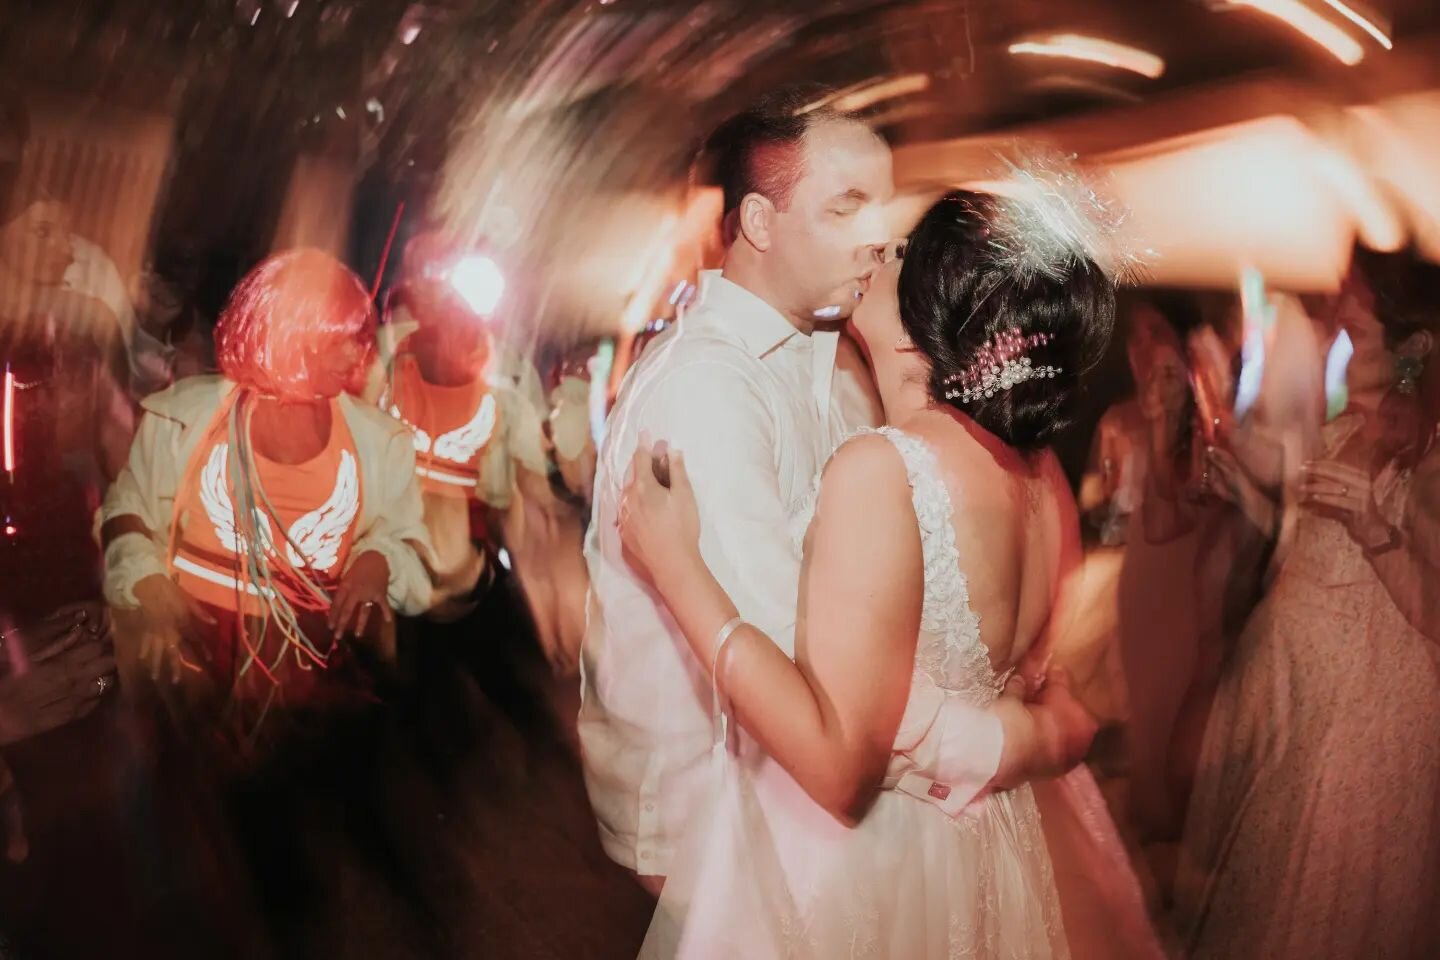 Las horas locas se est&aacute;n volviendo de mis partes favoritas de las bodas.

Hora loca: @horaloca_cce

#horaloca #bodasrd #noviasrd #motion #weddingparty